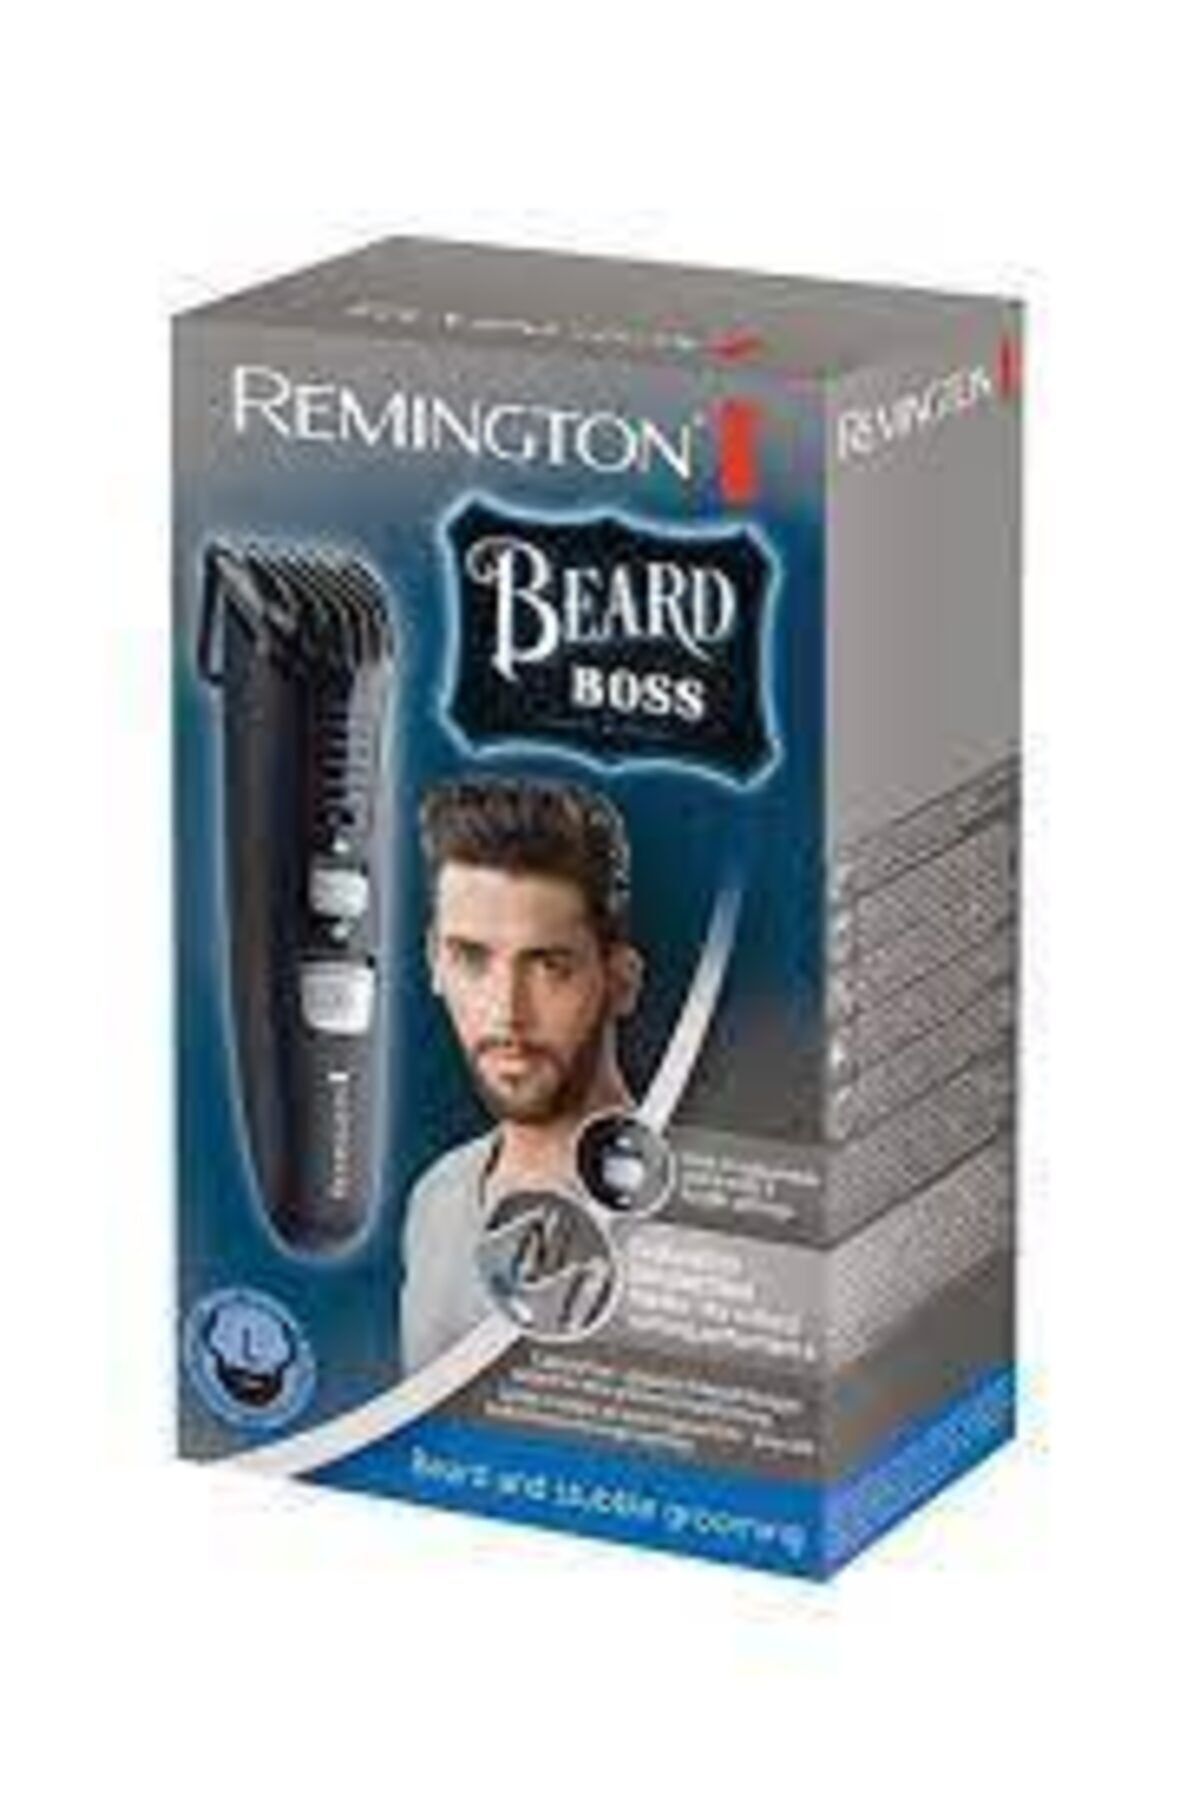 Remington 5-10 Beard Boss Tıraş Makinesi Mb4120 E51 4008496870257 Yok Yok Kuru 2 Yıl Kablosuz Sakal 3 Saat ve